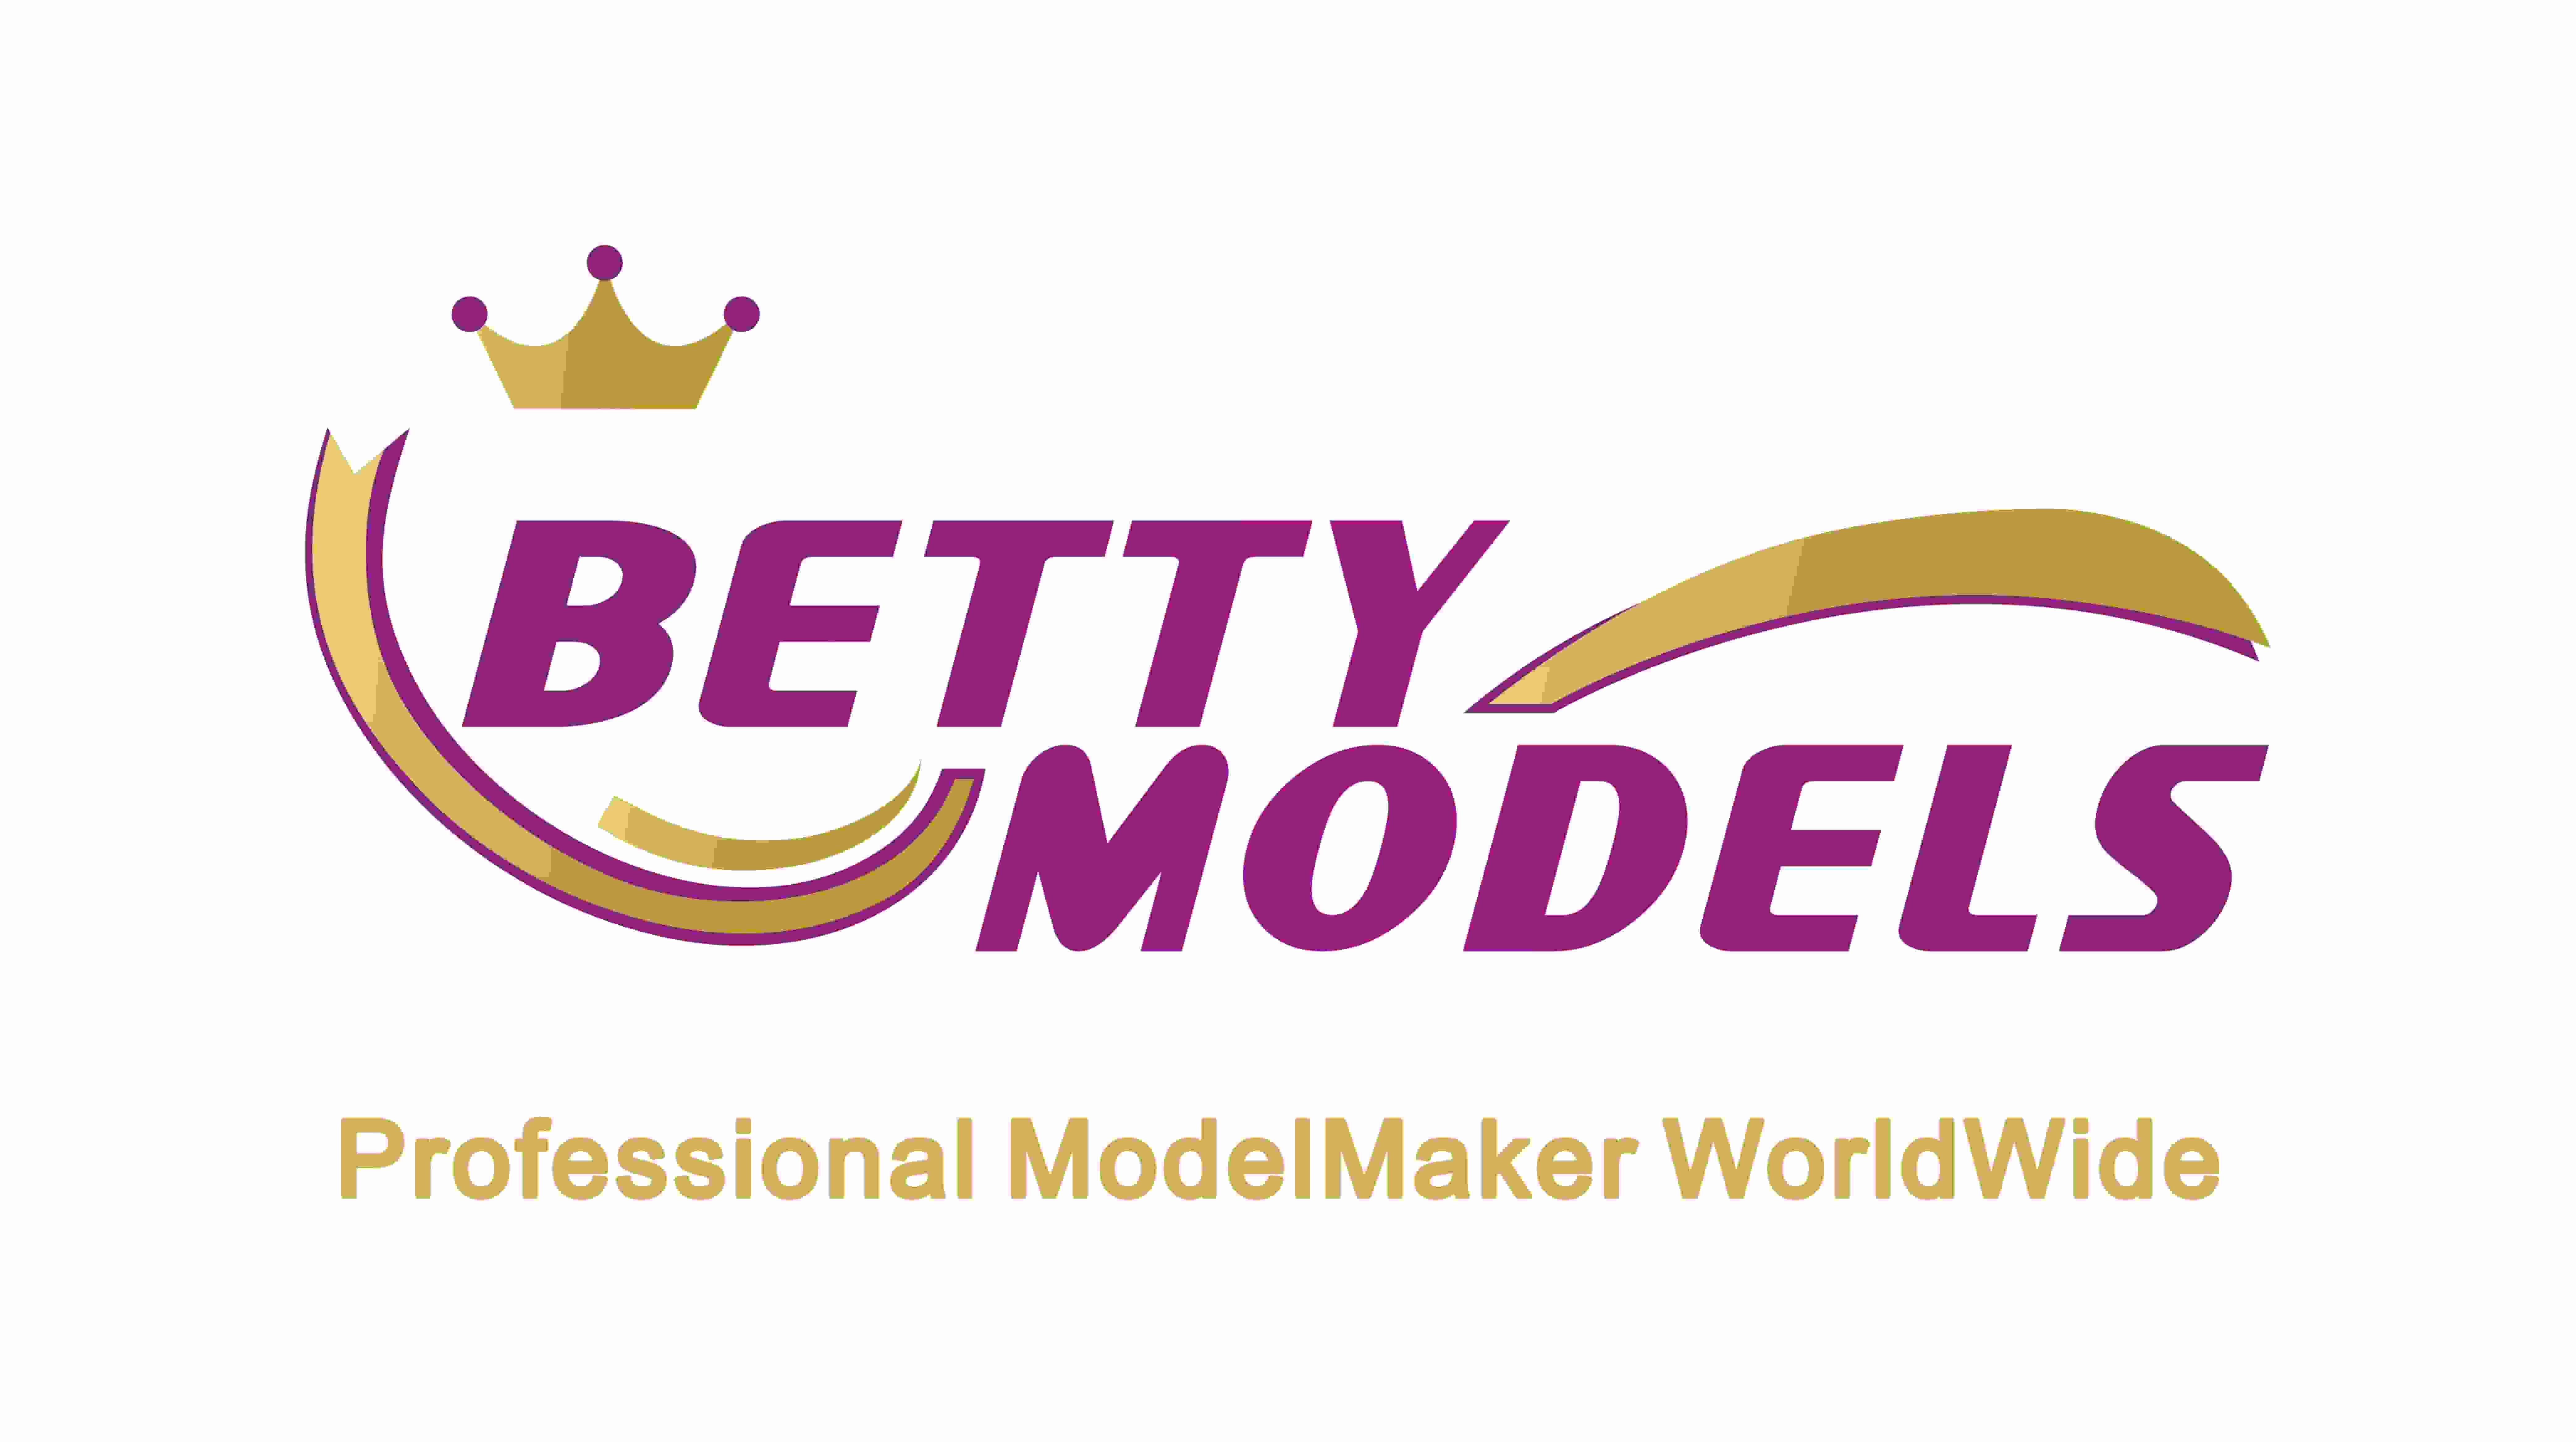 Betty Models logosu yeni logoya dönüştü